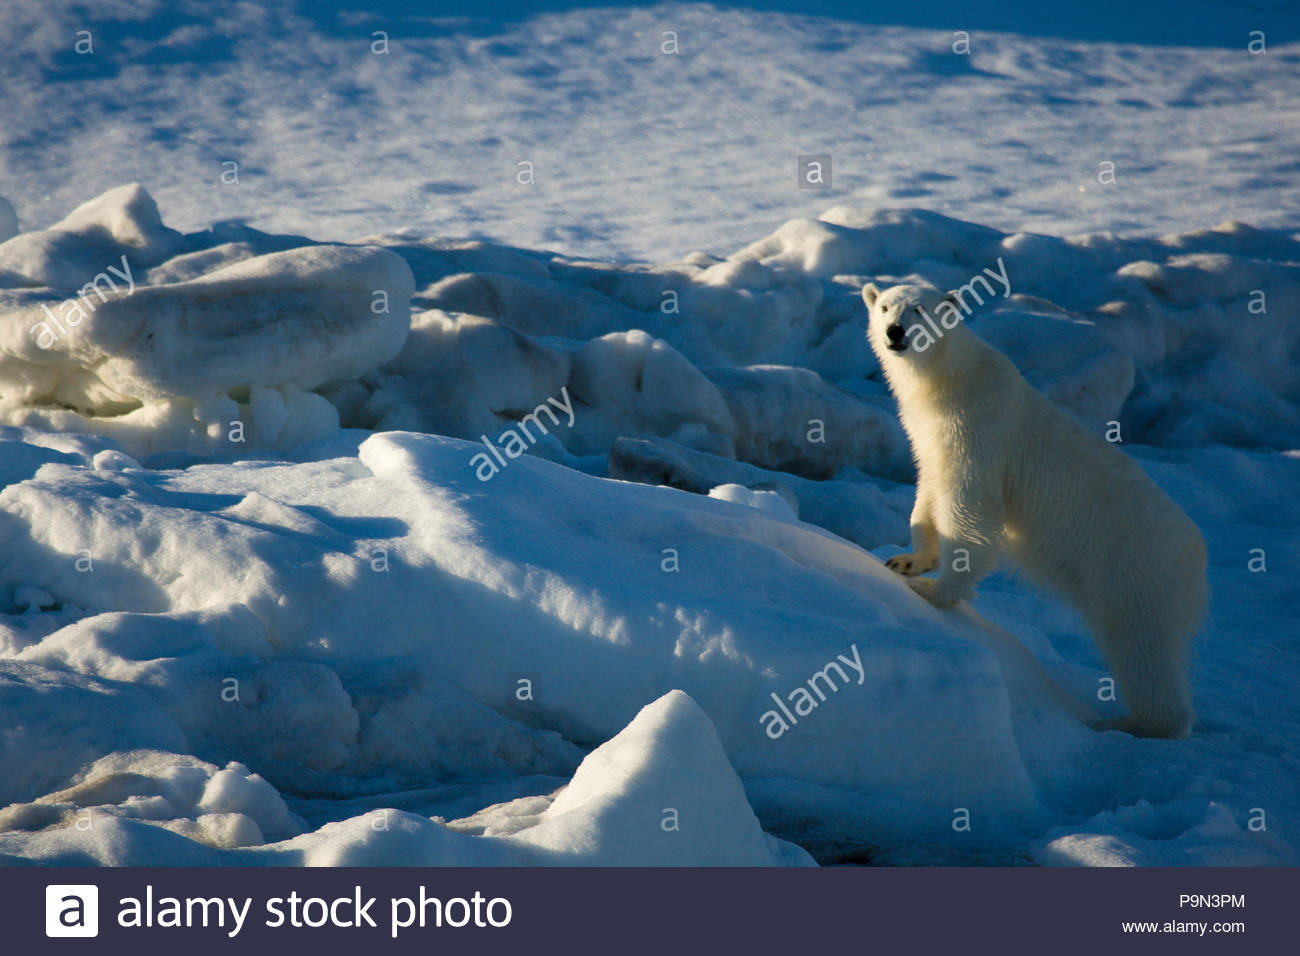 Orso polare, Ursus maritimus, sulla banchisa. Foto Stock